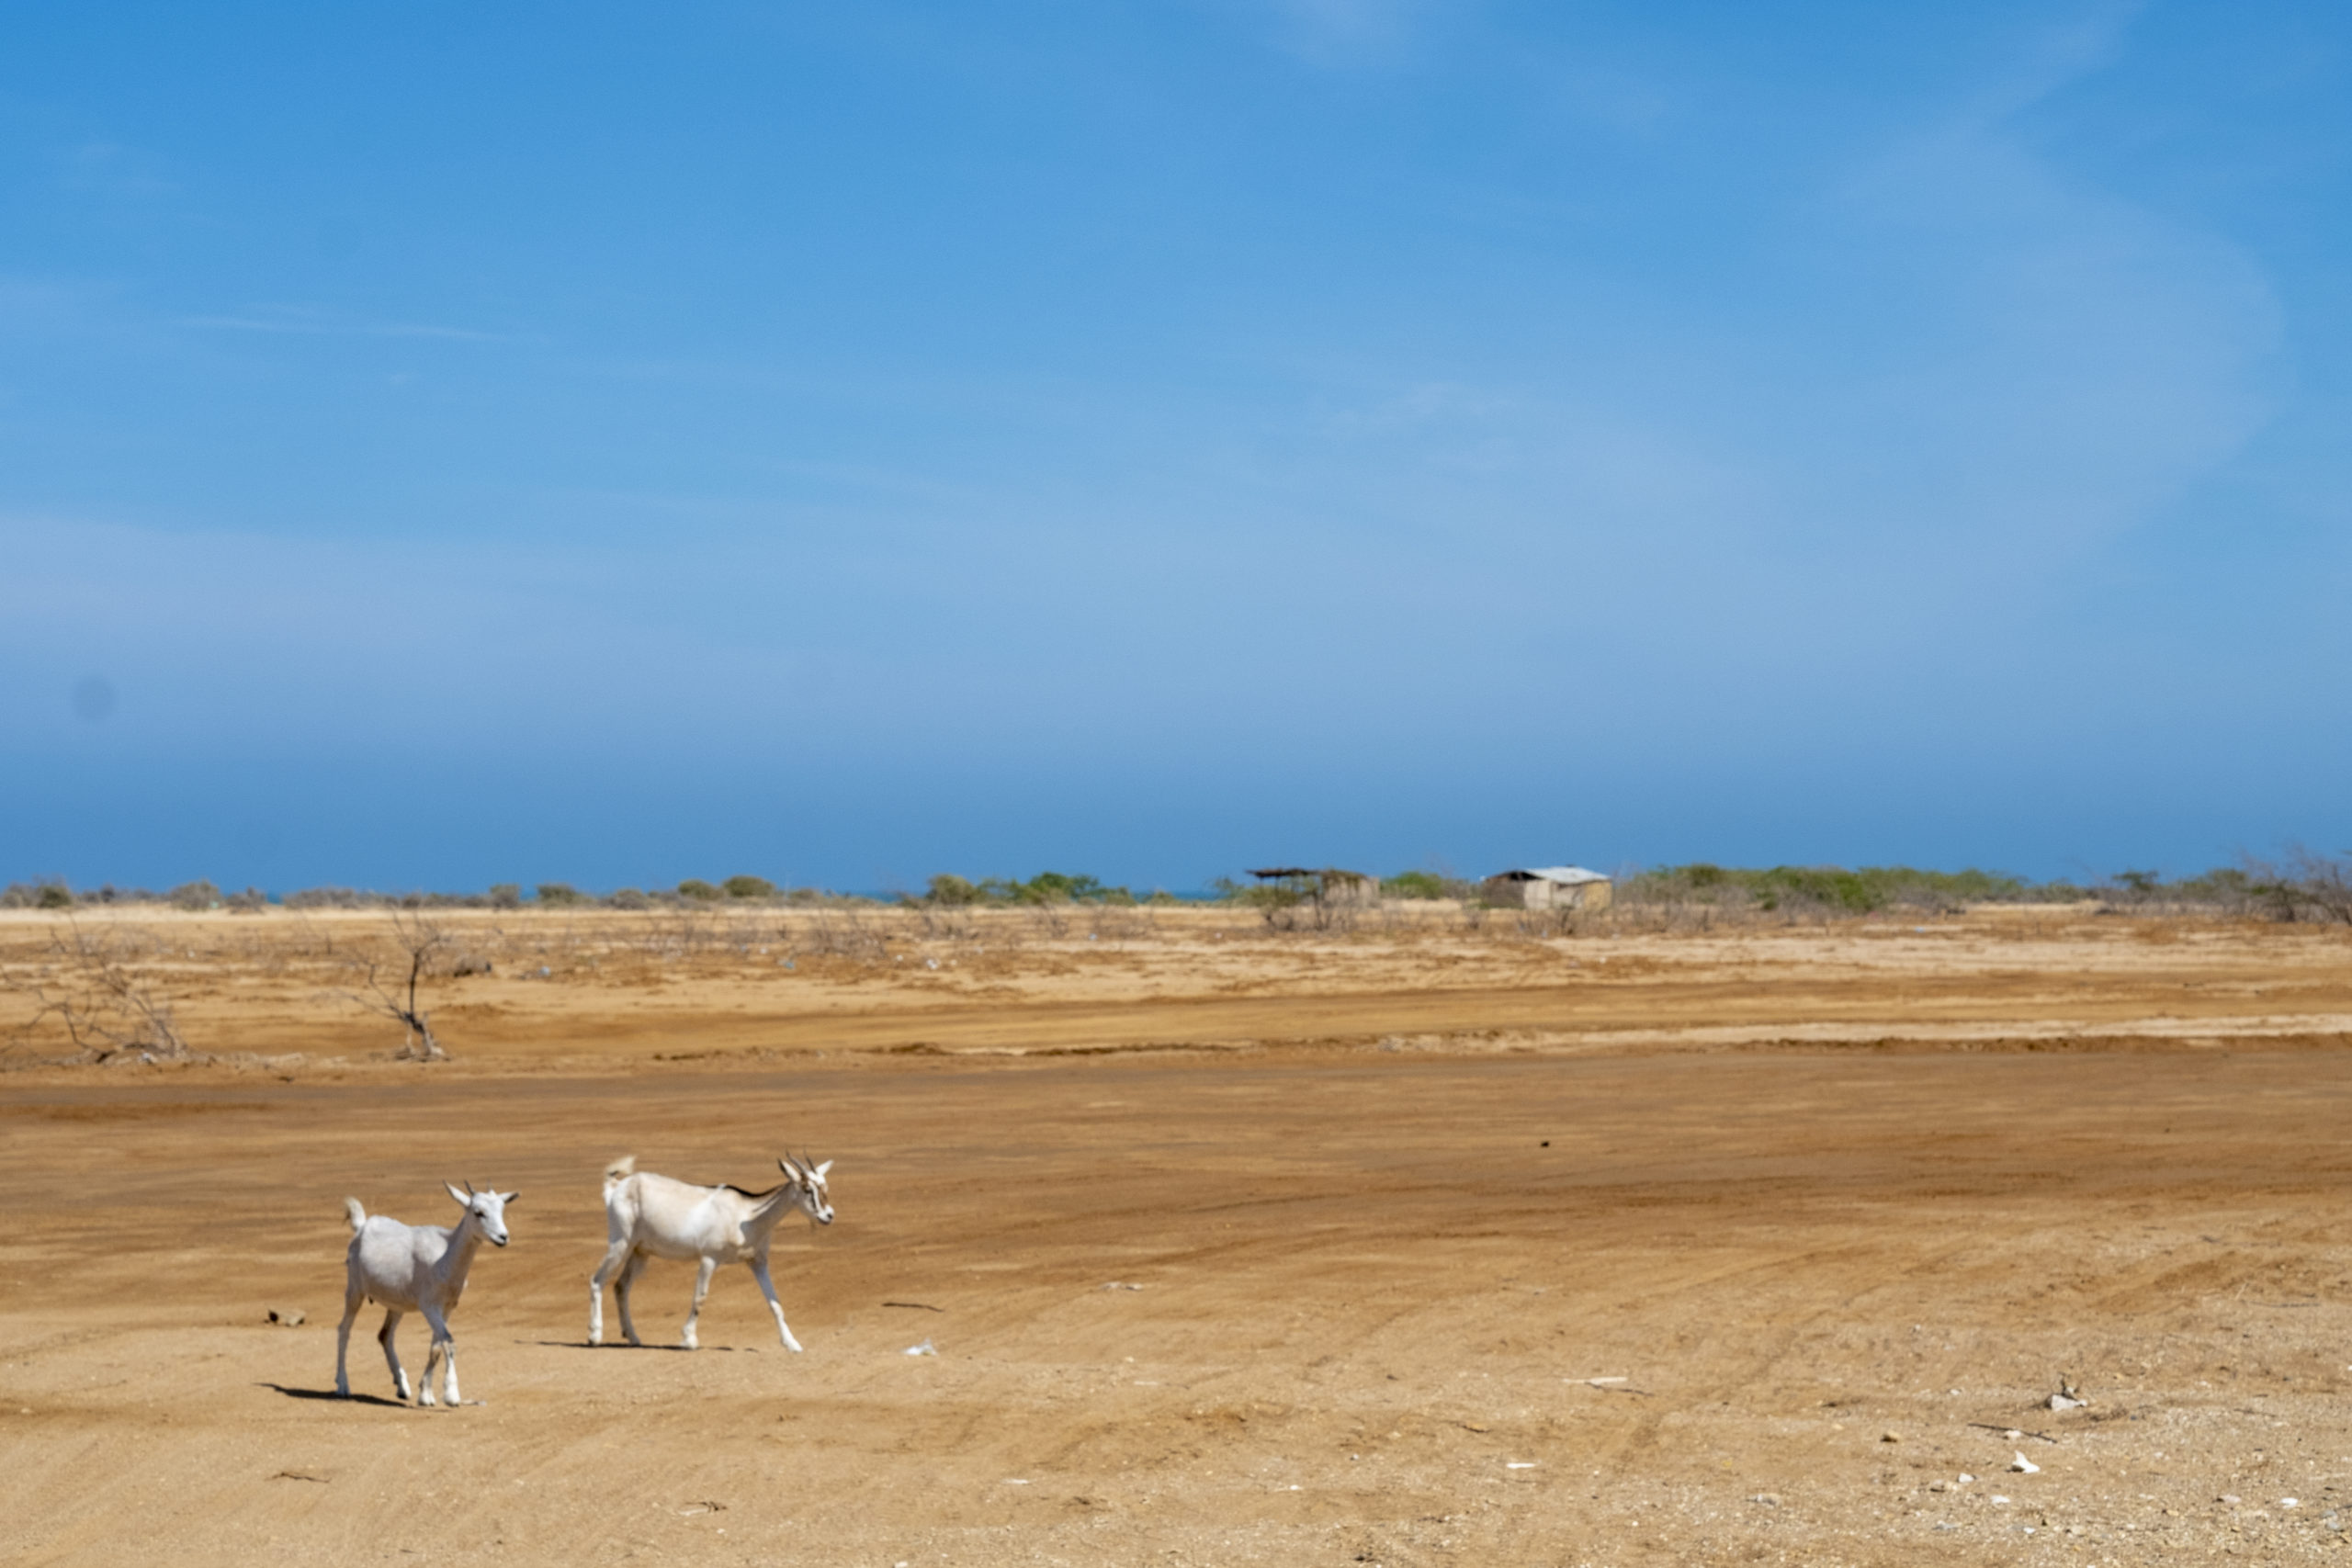 Guajira 1. Las verdades ocultas del único parque eólico instalado –  “renovables Sí, pero no Así”, dicen comunidades –